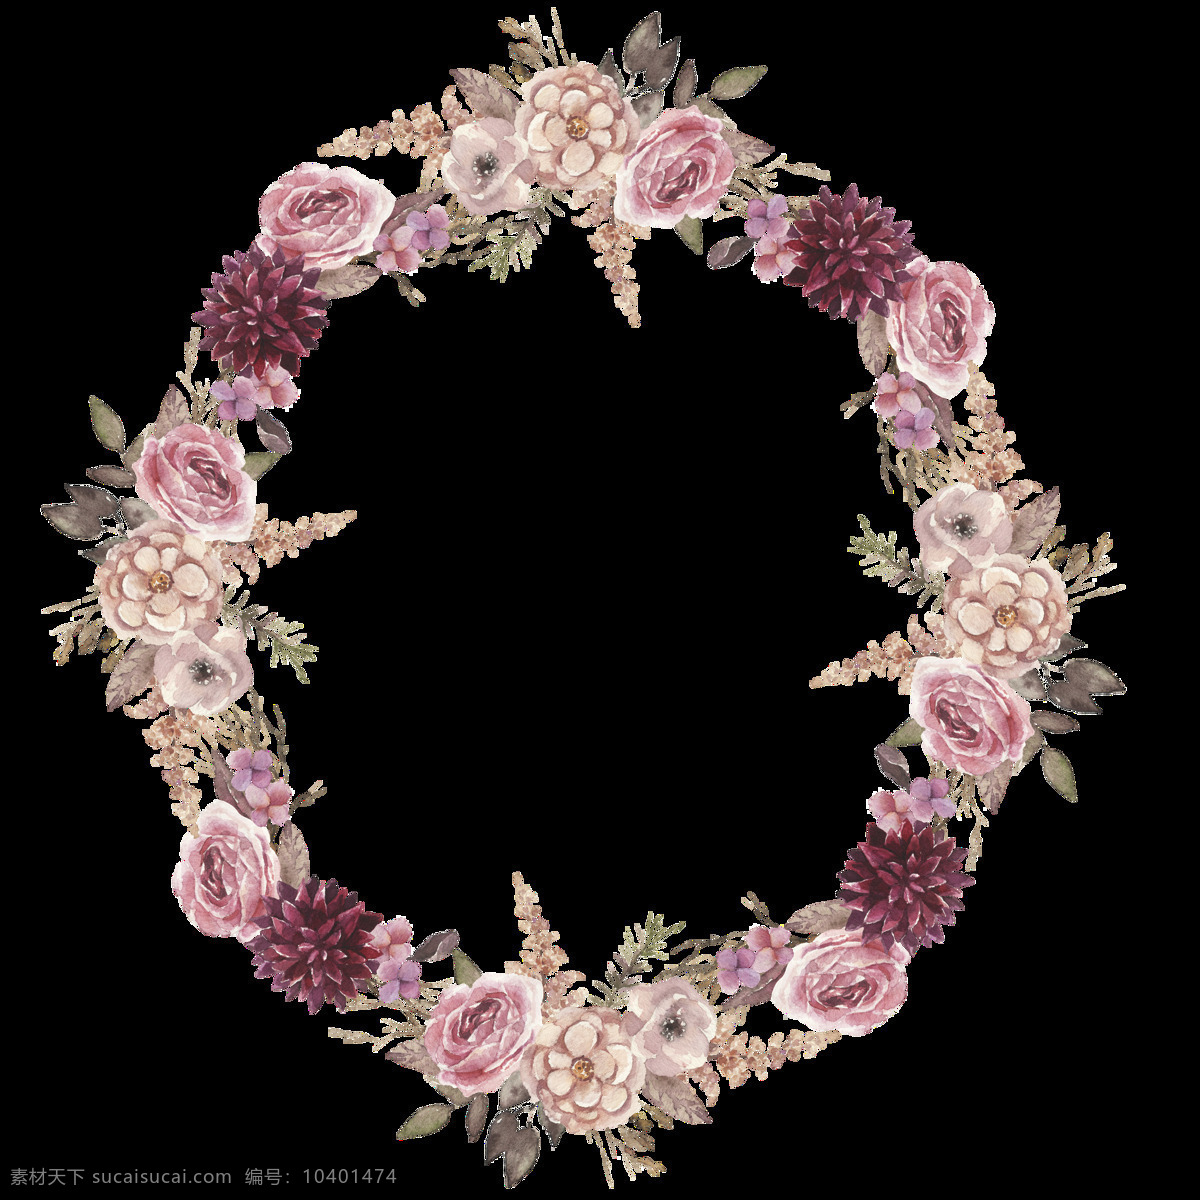 印花 漂亮 花环 透明 装饰 设计素材 背景素材